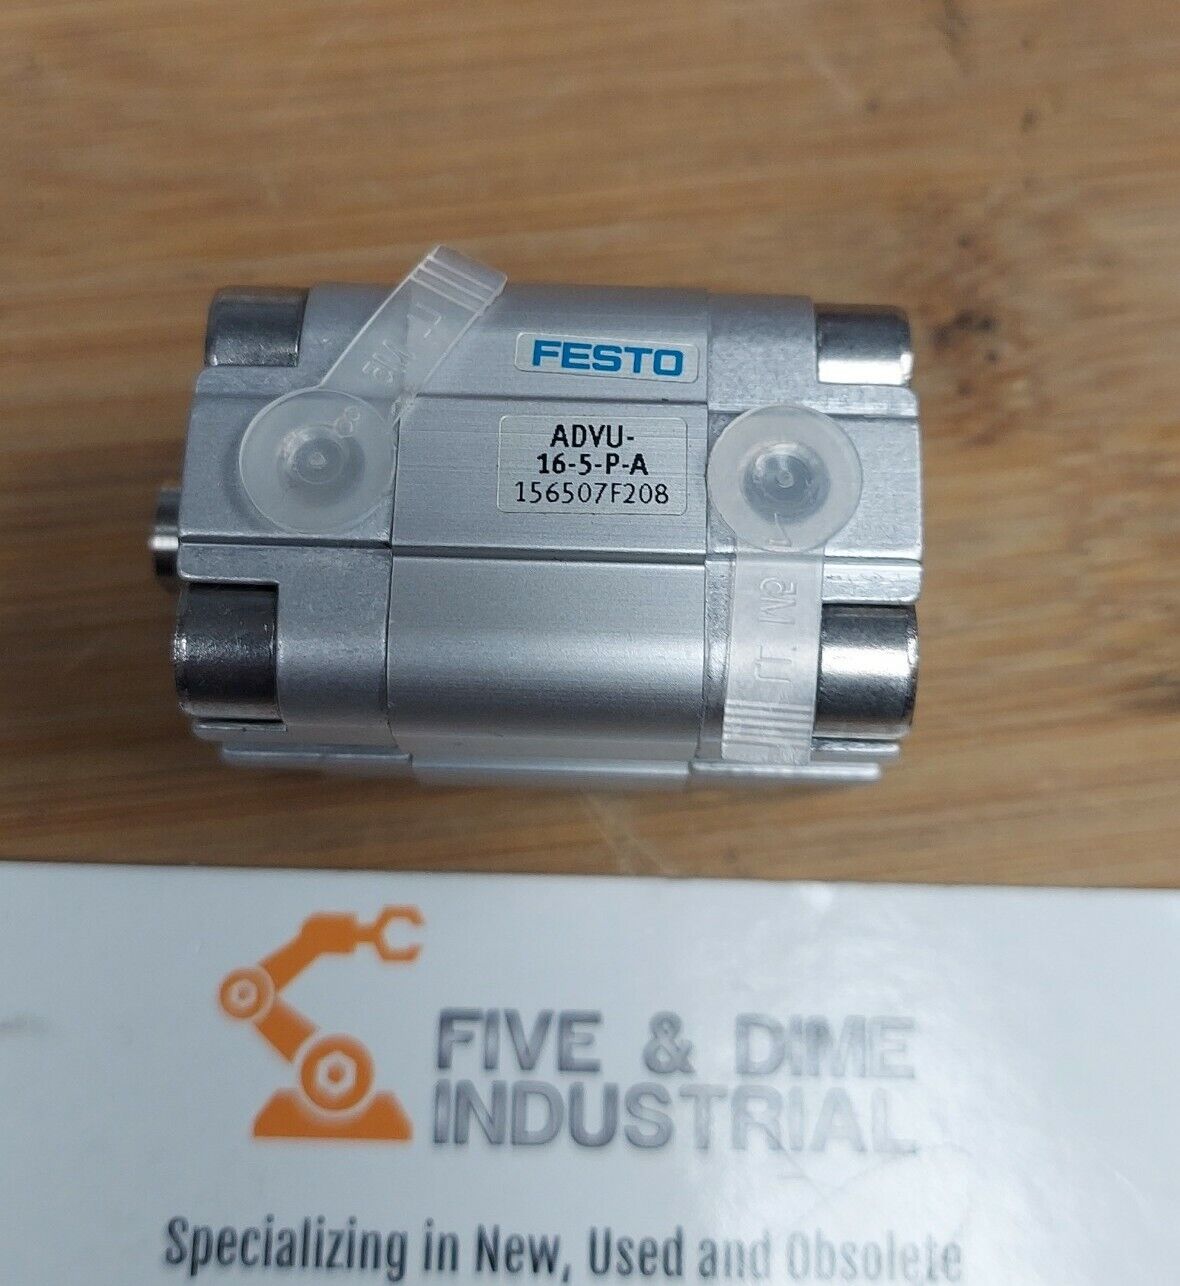 Festo AEVU-16-5-P-A Compact Cylinder Valve Pneumatic 156935 AEVU 16 5 PA  GR129